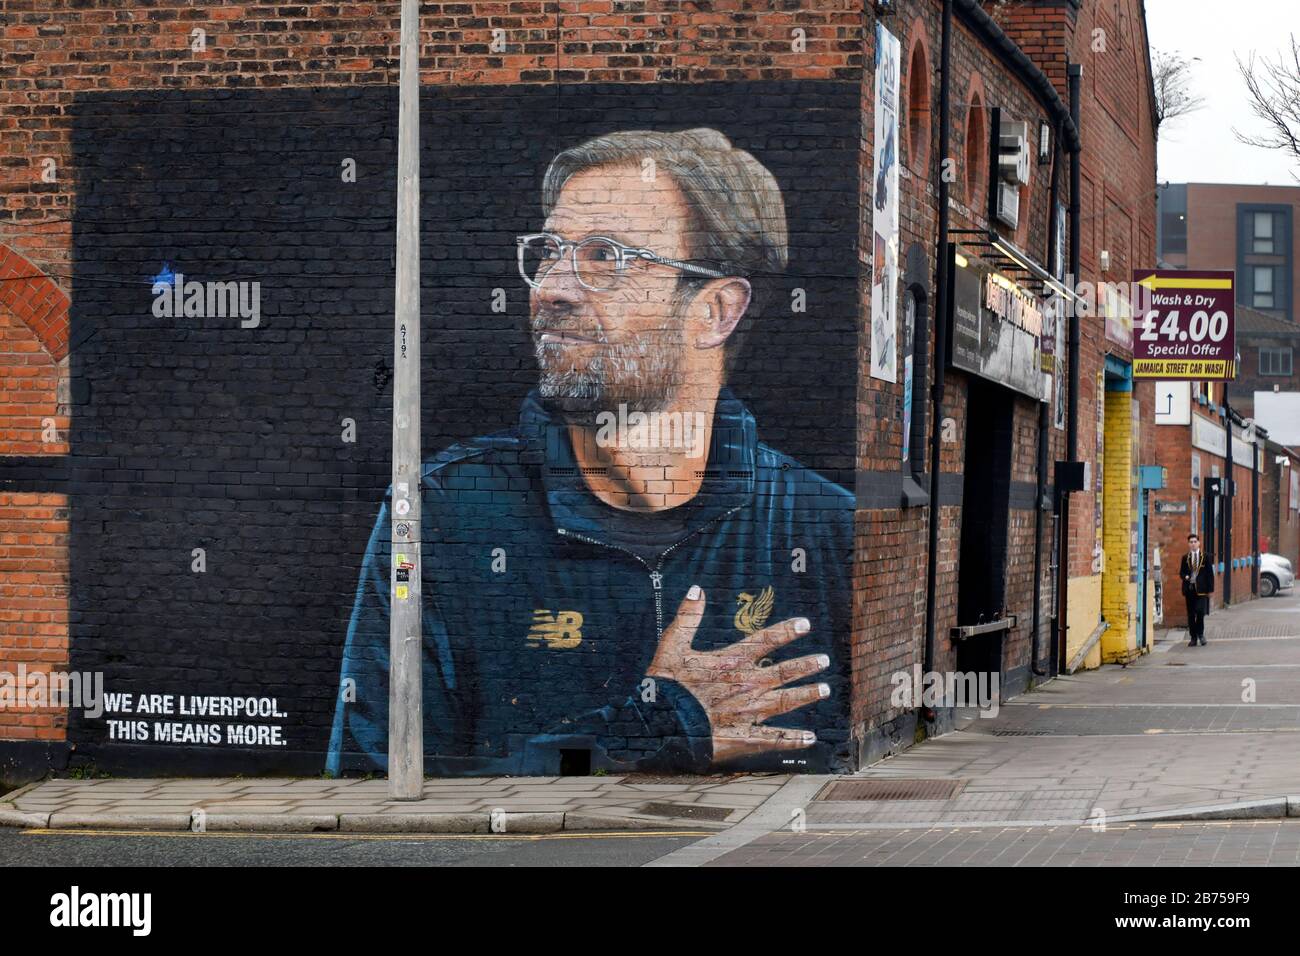 Ein großes Plakat mit dem Bild von Jürgen Klopp, dem Trainer des FC Liverpool, und dem Sprichwort "wir sind Liverpool, das heißt mehr", hängt am 01.03.2019 an einer Hauswand im Liverpooler Stadtteil "Baltic Triangle". [Automatisierte Übersetzung] Stockfoto